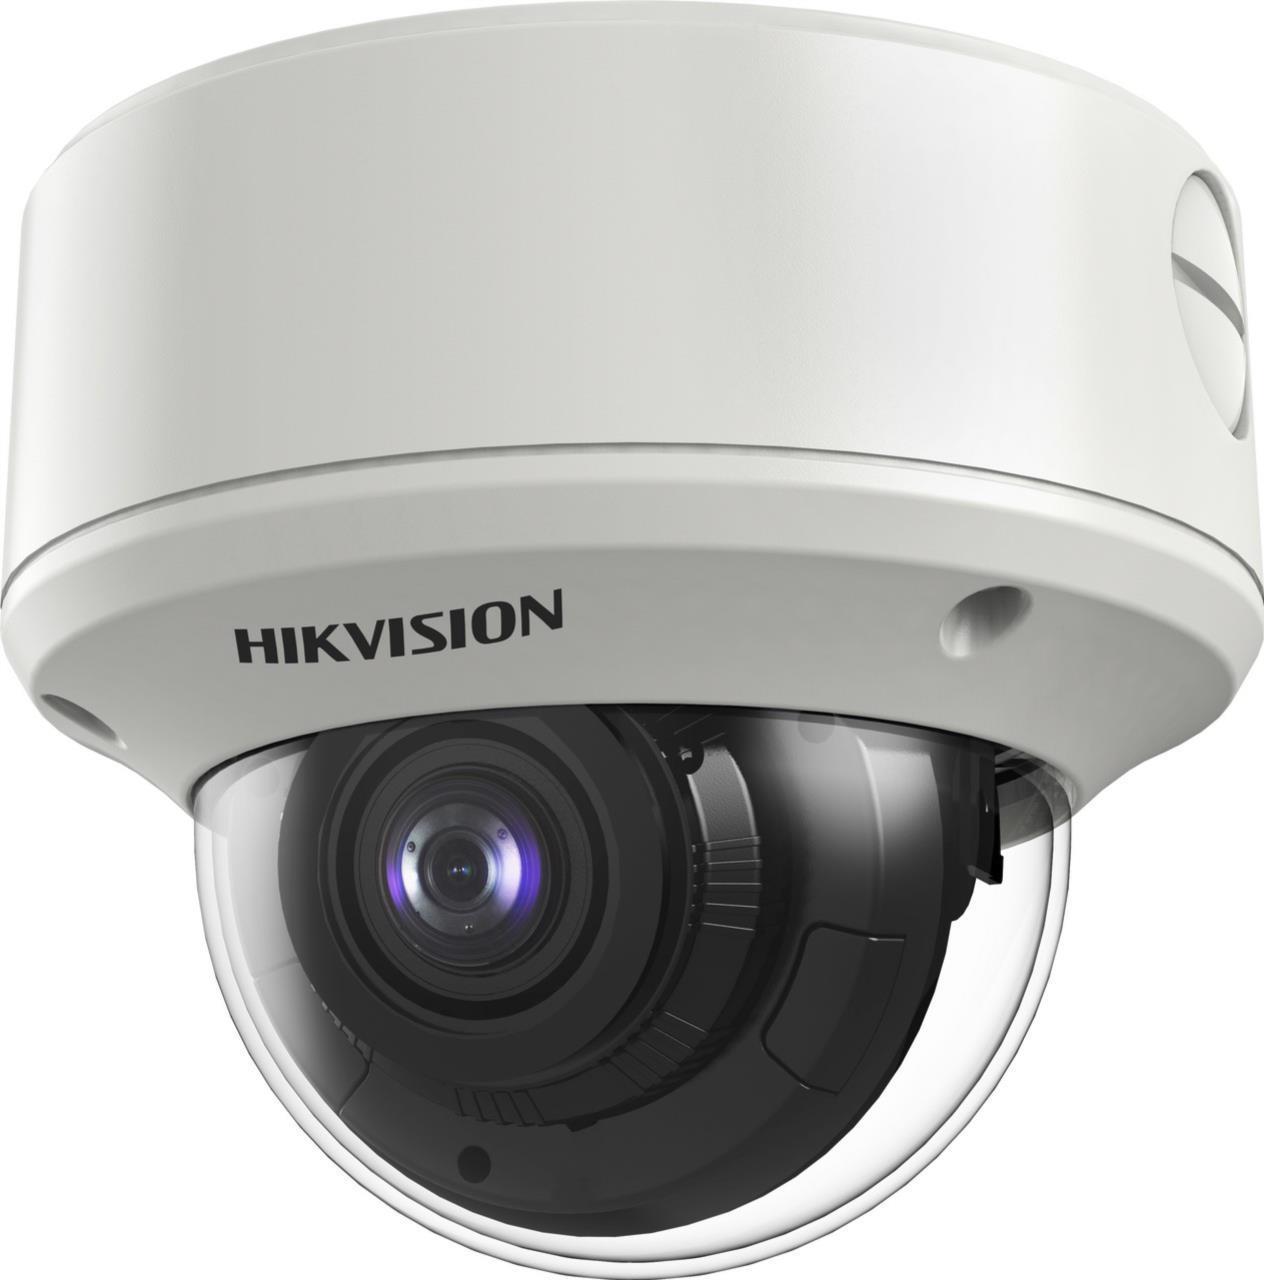 Hikvision 5DS-2CE59H8T-AVPIT3ZF - 5MP Analog VR Dome Kamera, IP67, 2.7-13.5mm Analoge Kameras (300611891_D)